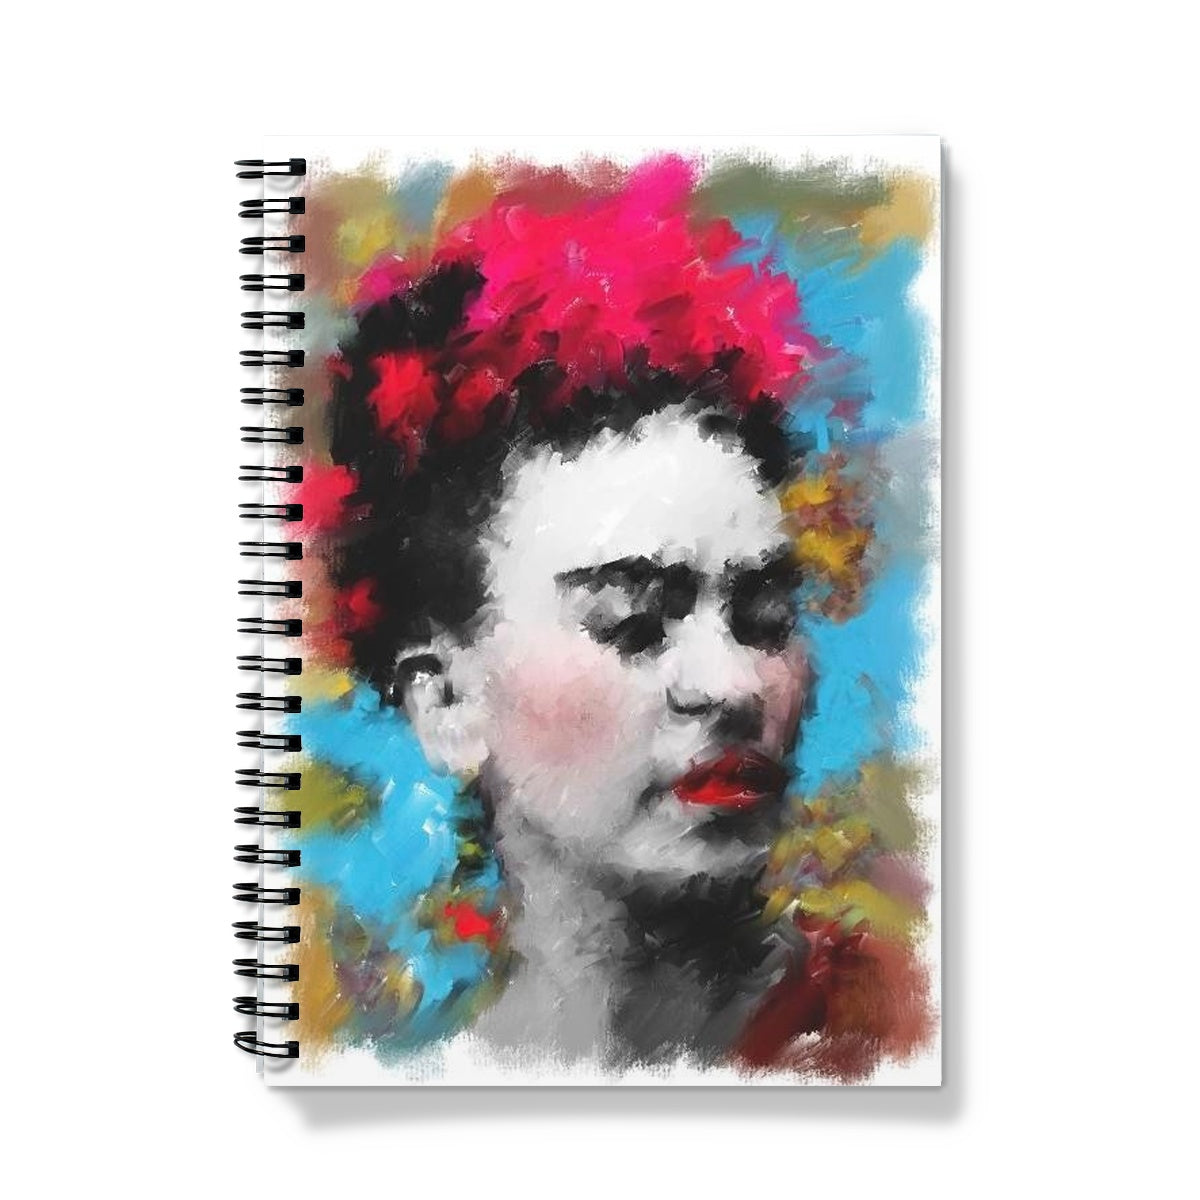 Frida Kahlo - Portrait Notebook